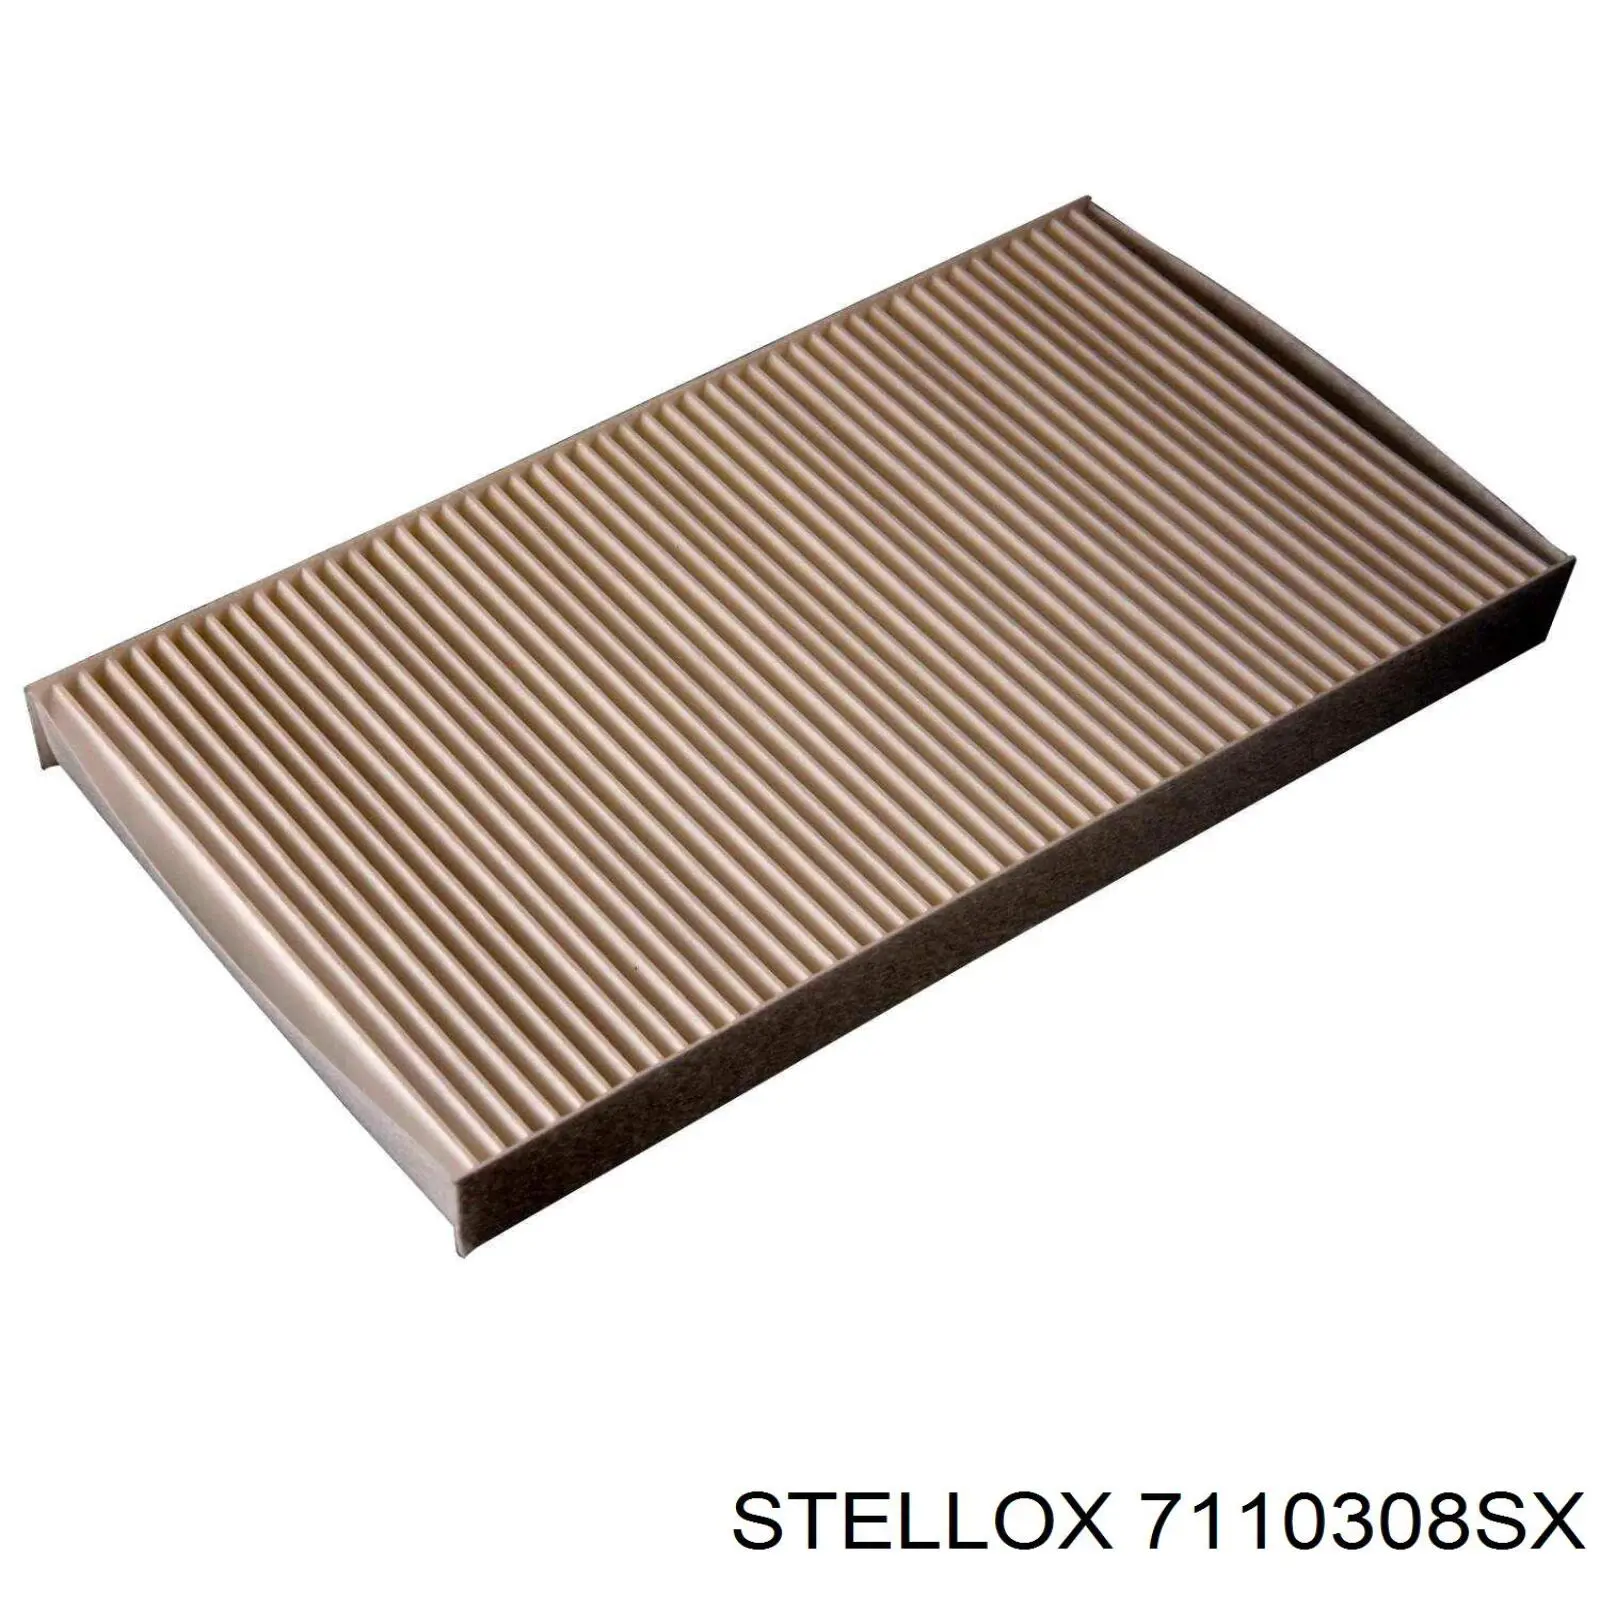 7110308SX Stellox filtro habitáculo